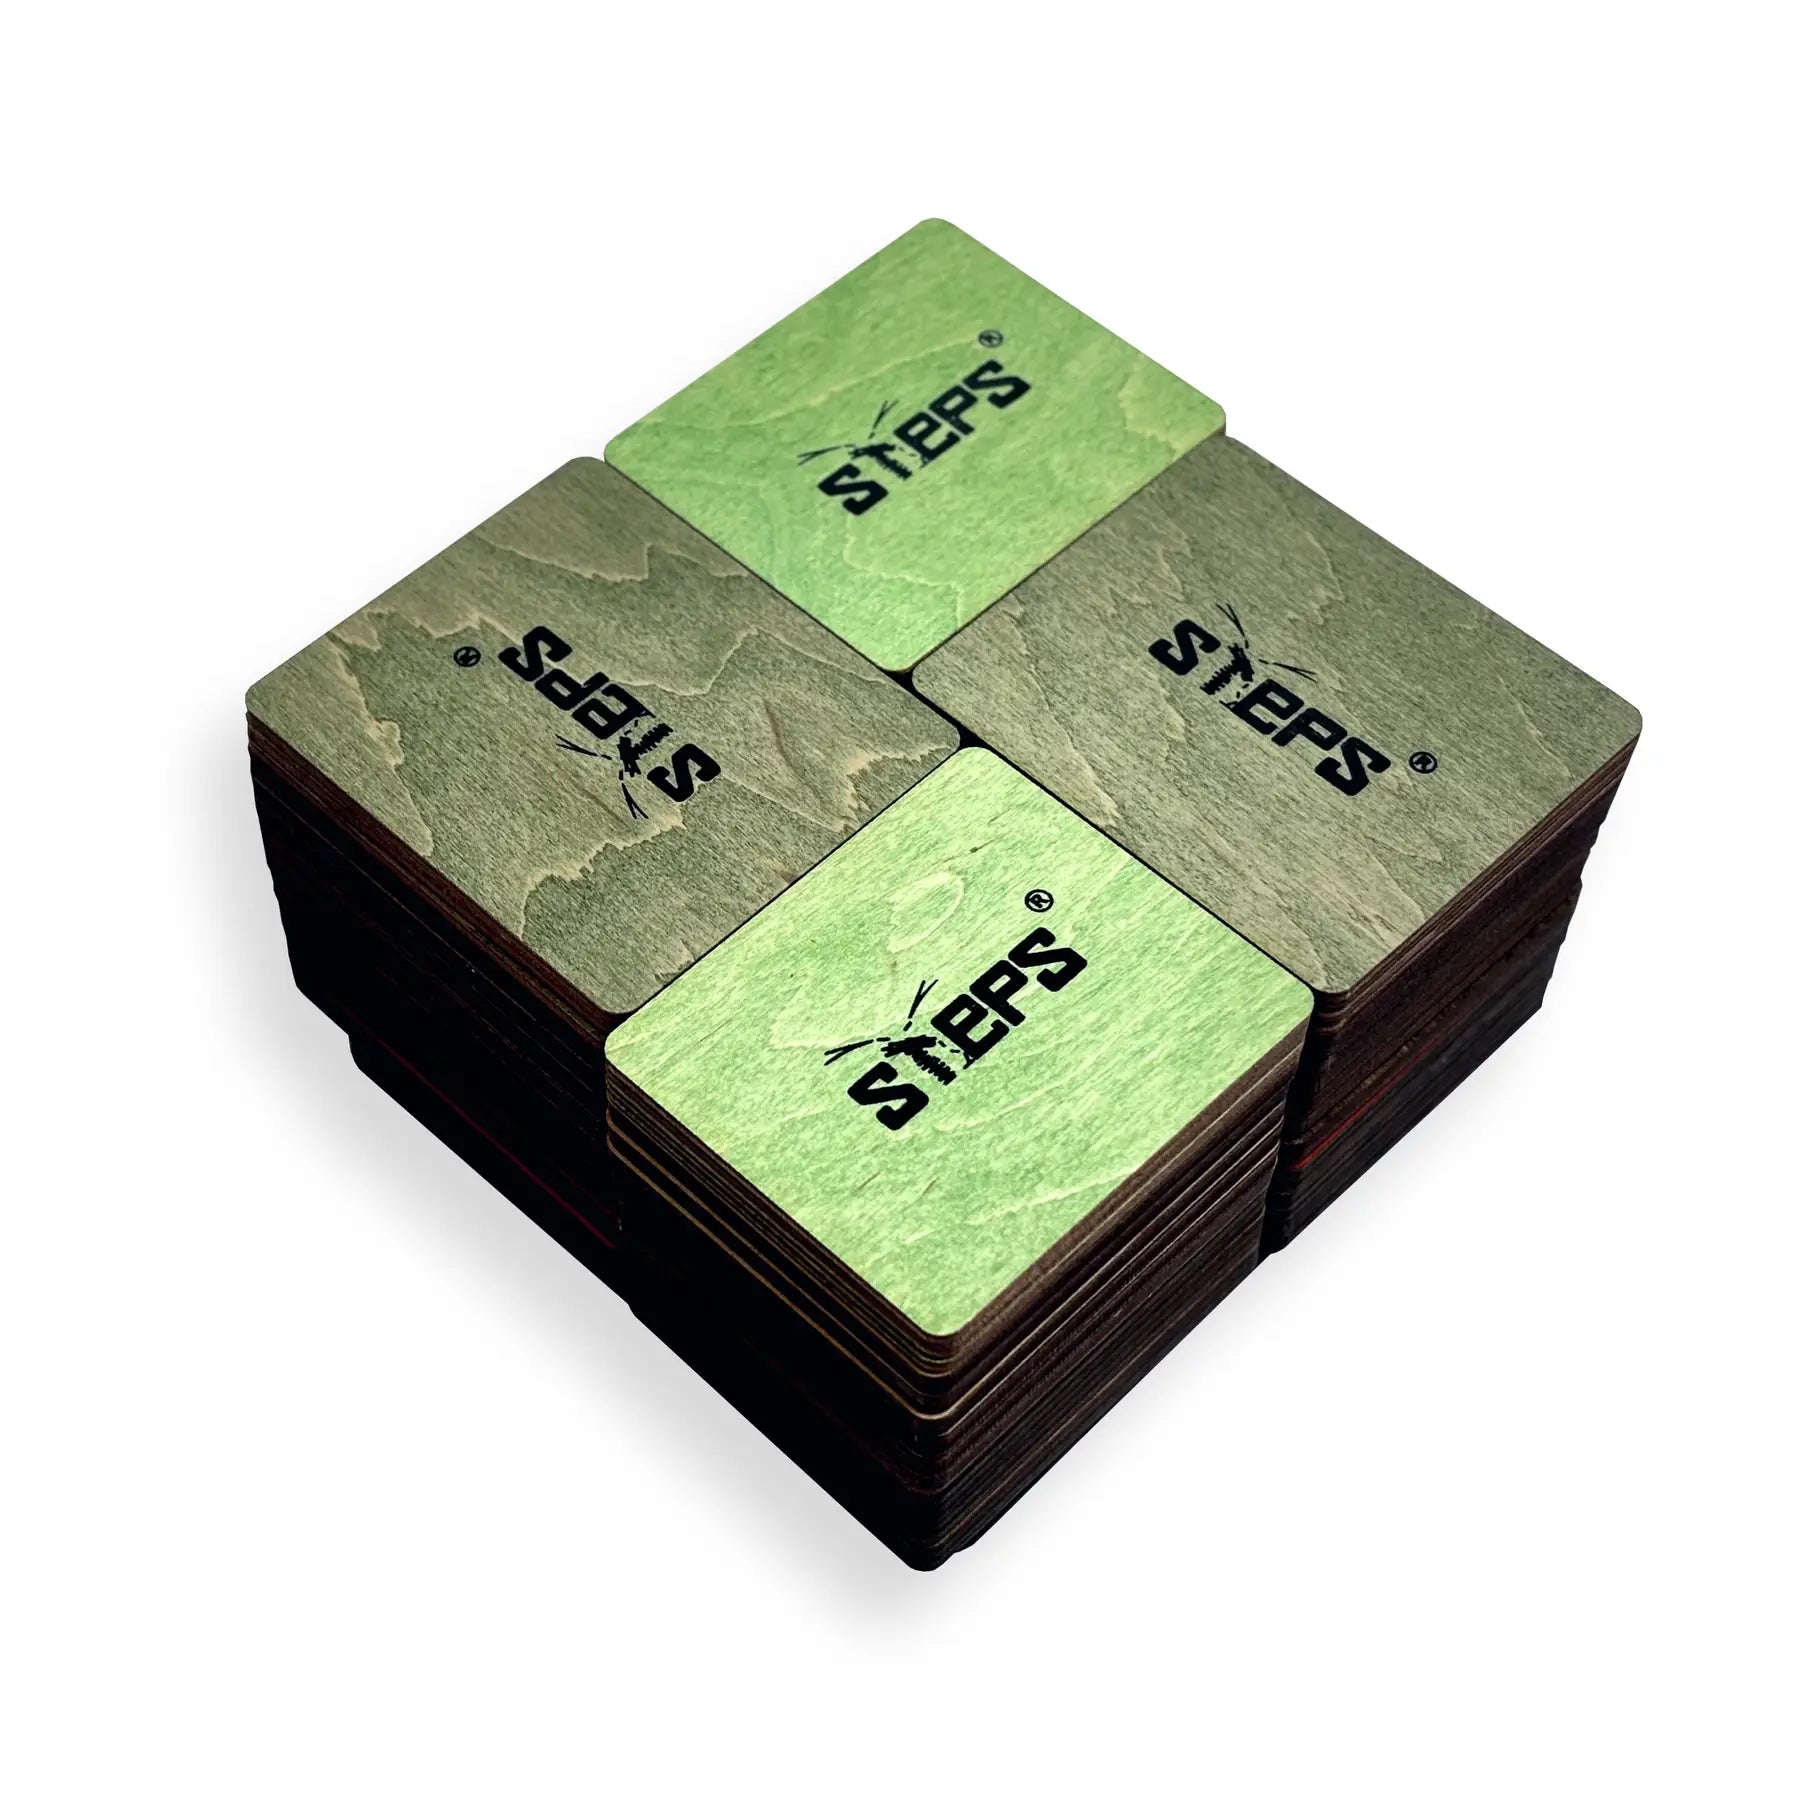 Stalo žaidimas Steps Starter Pack 1-6 spēlētāji 48 kvadratai